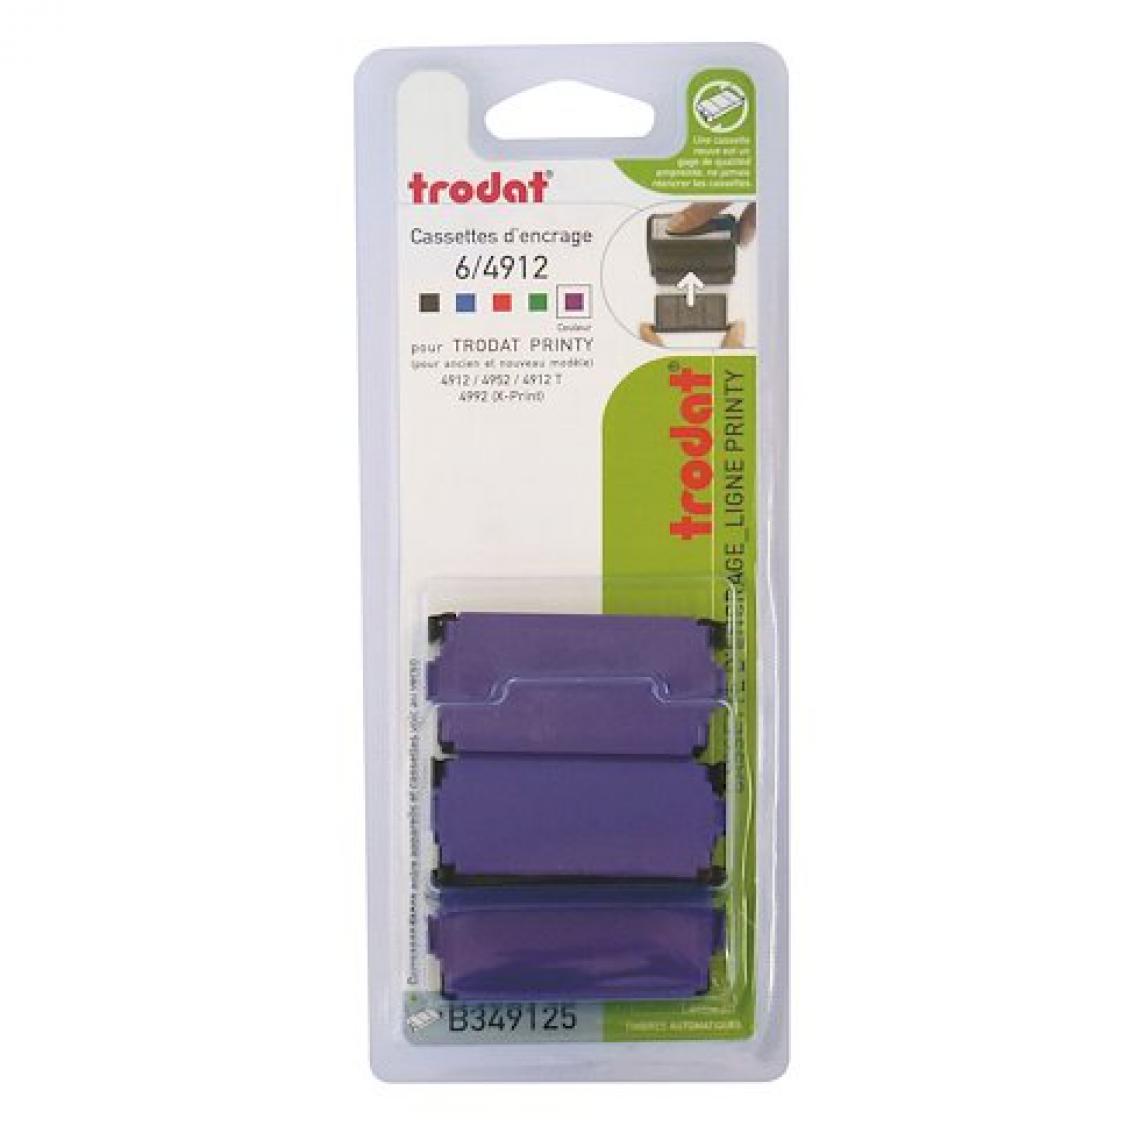 Trodat - Cassette d'encrage Trodat Printy 6/4912 - violette - Lot de 3 - Accessoires Bureau